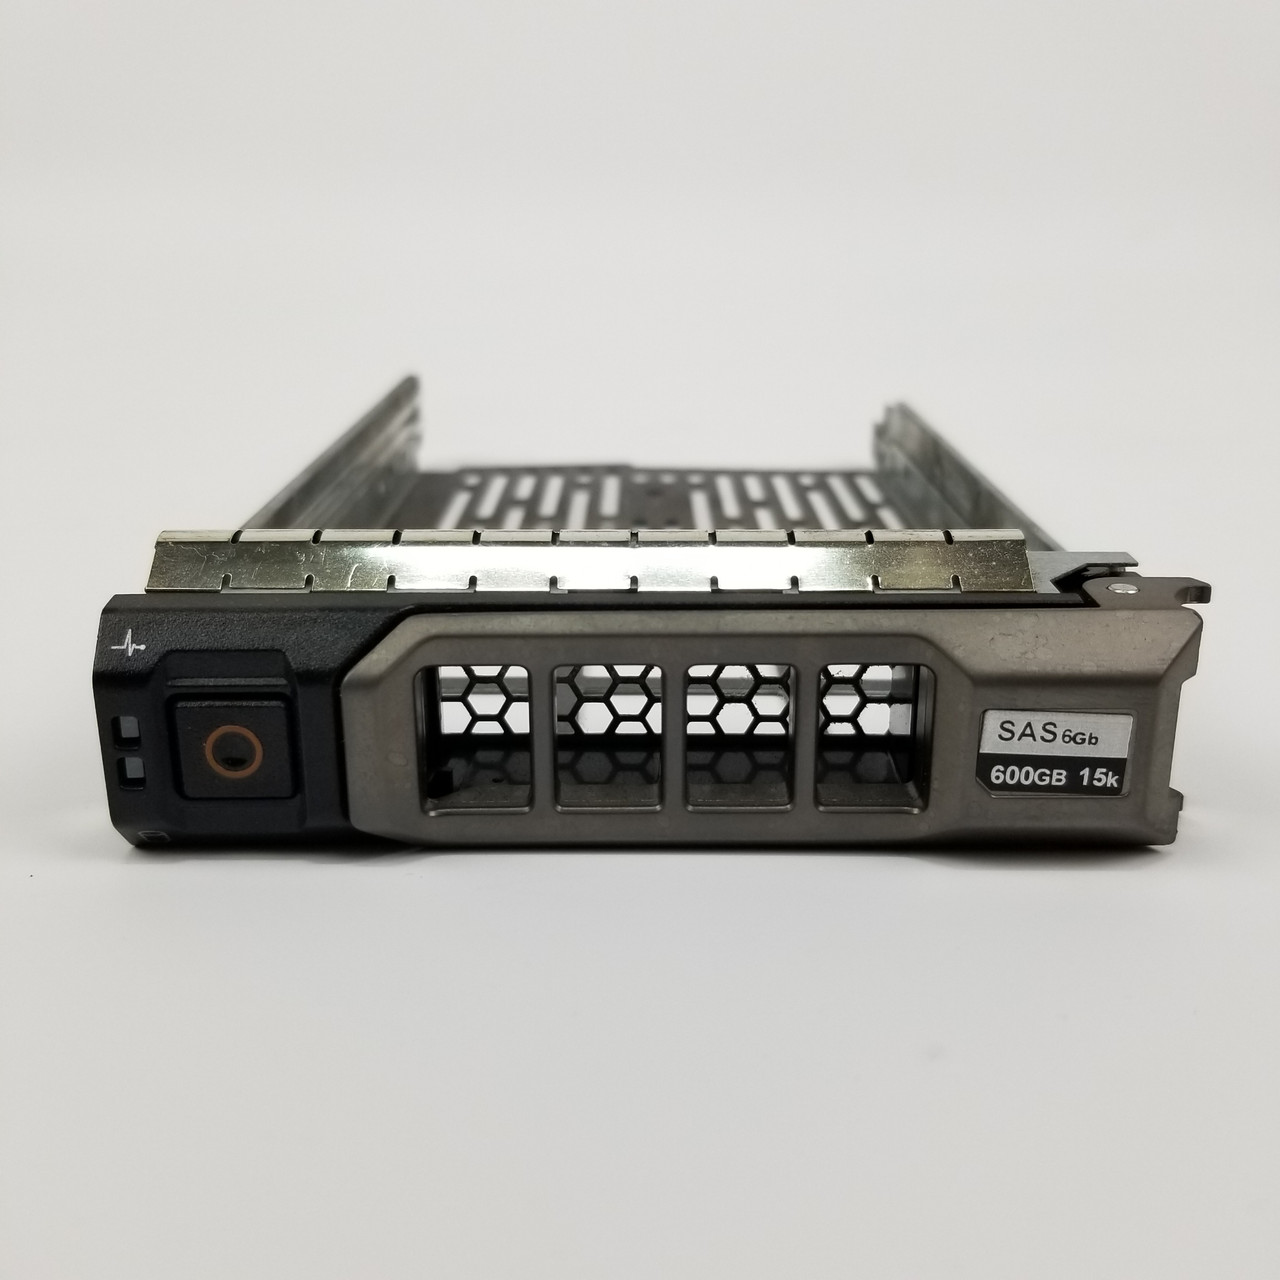 Dell PowerEdge R520 Server Blade No OS